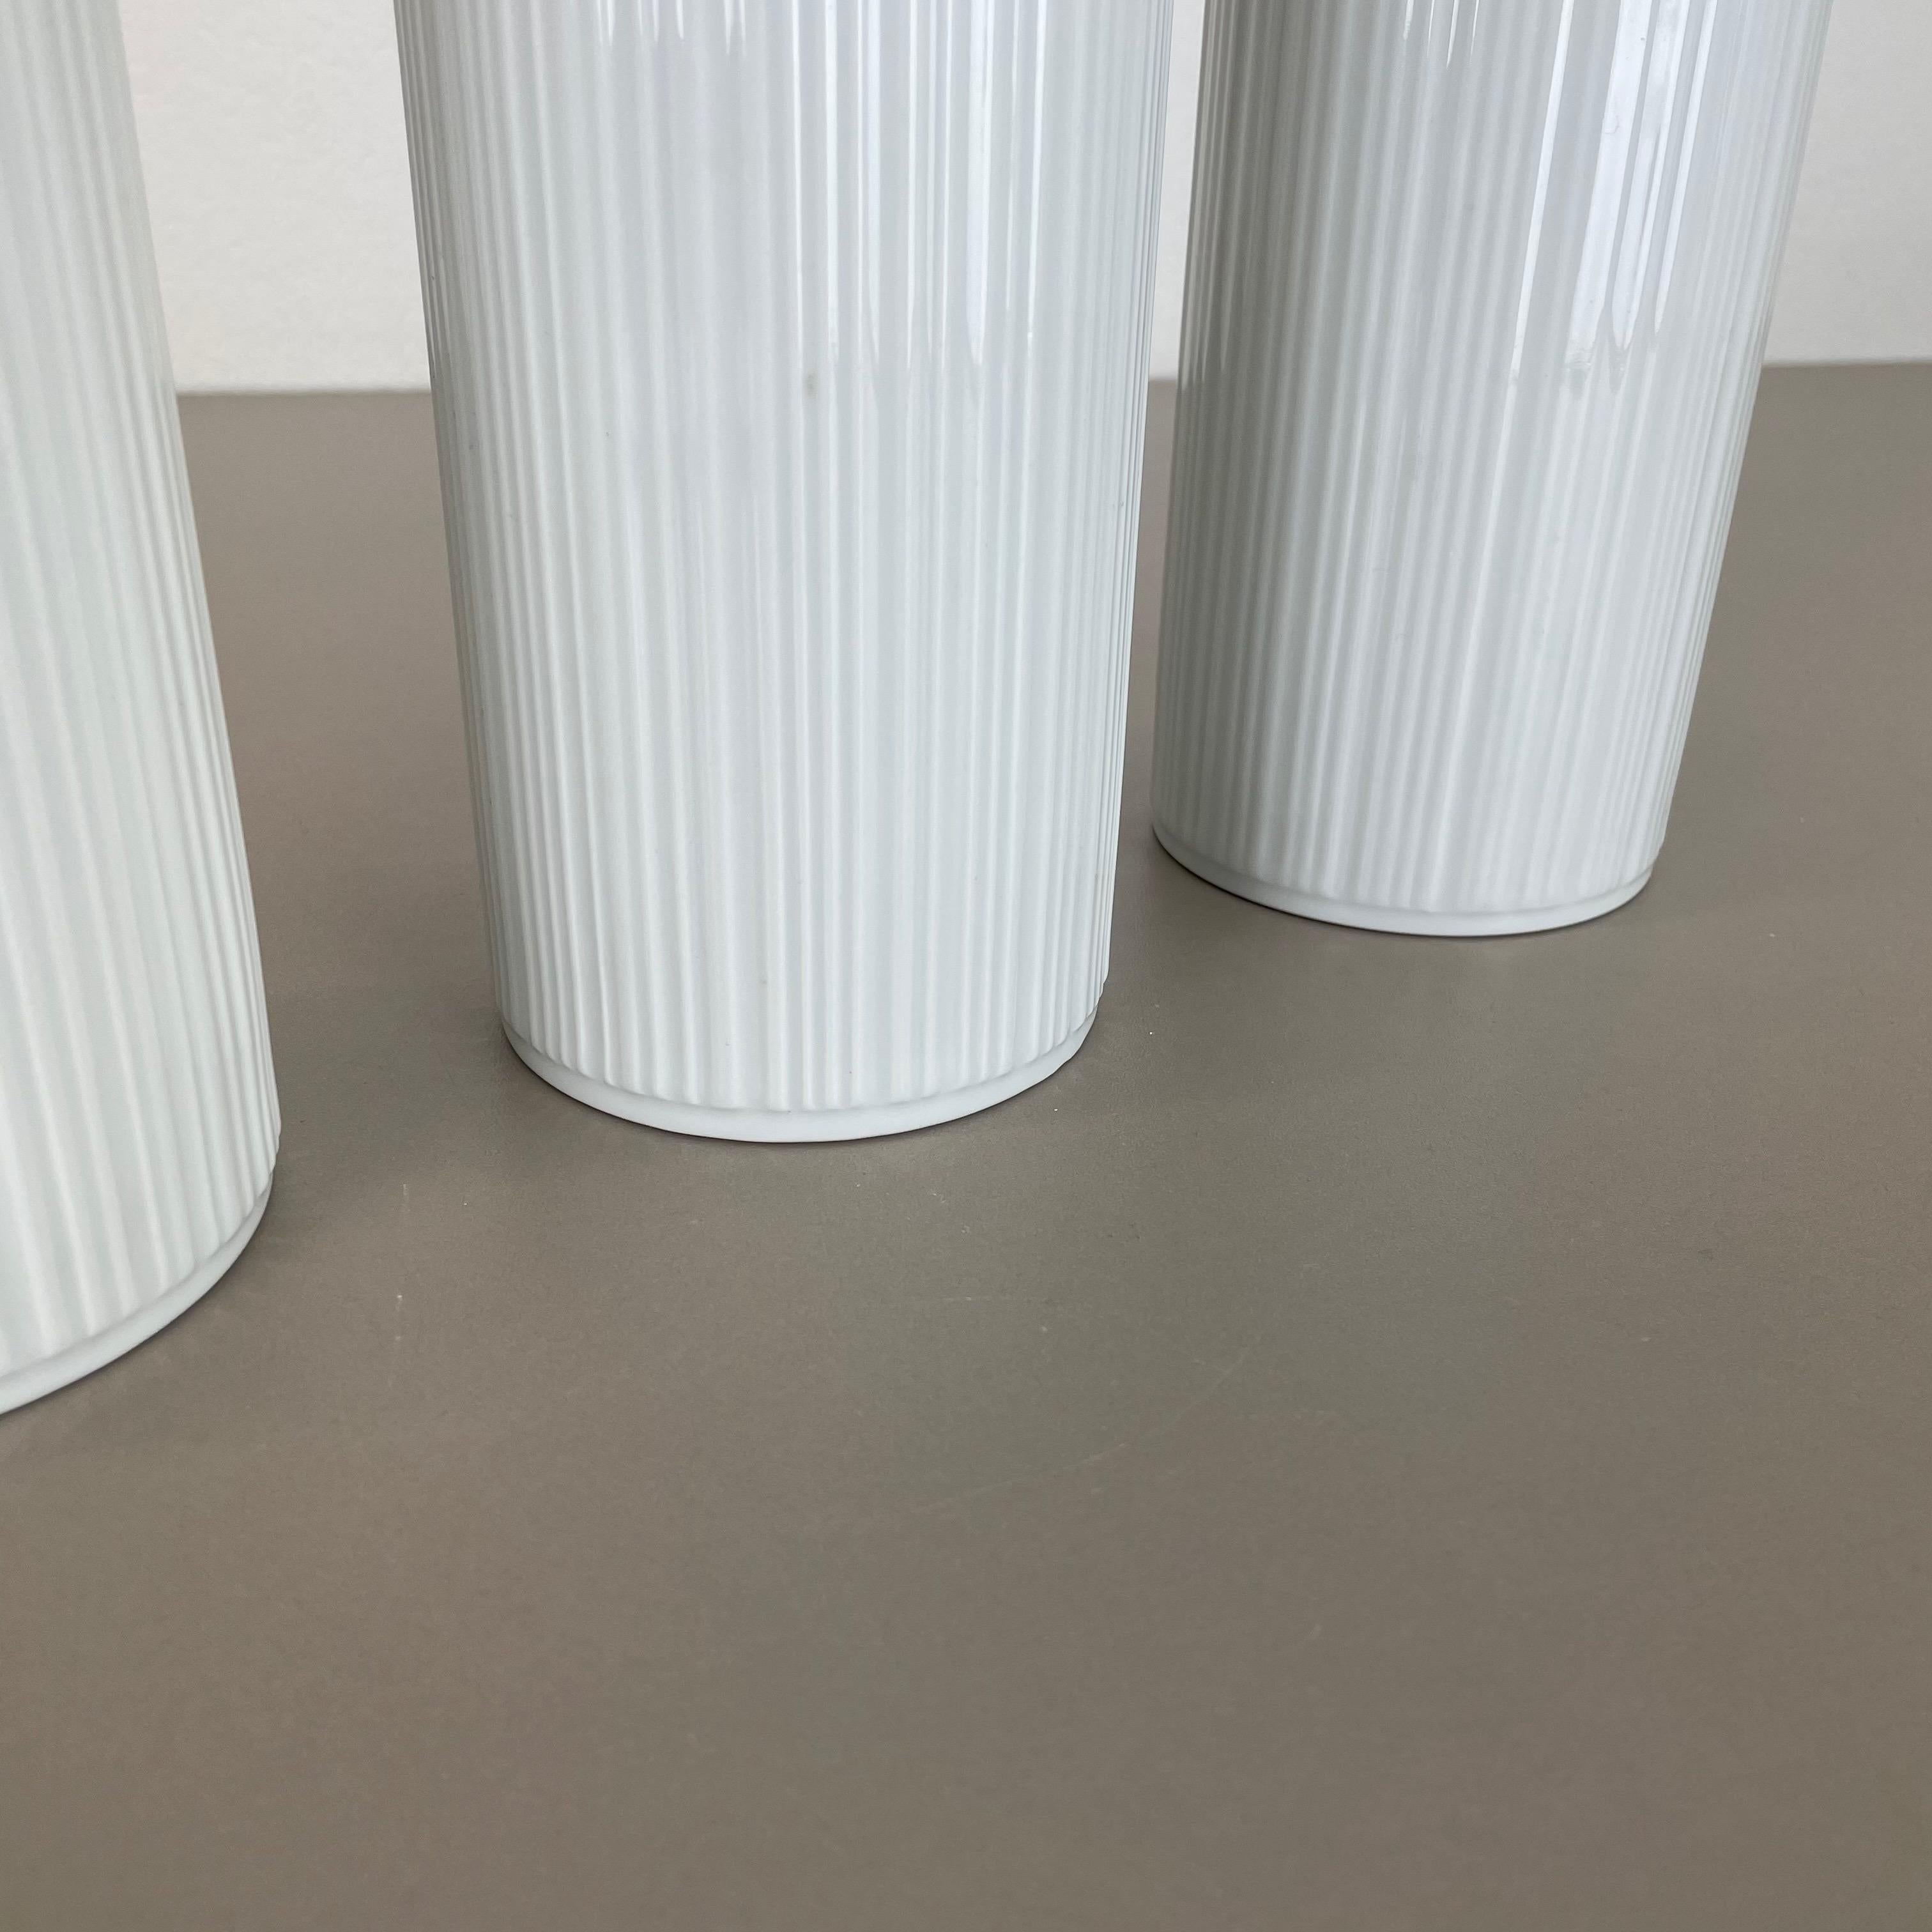 Set of 3 OP Art Porcelain Vases by Melitta Minden, Germany, 1970s For Sale 2